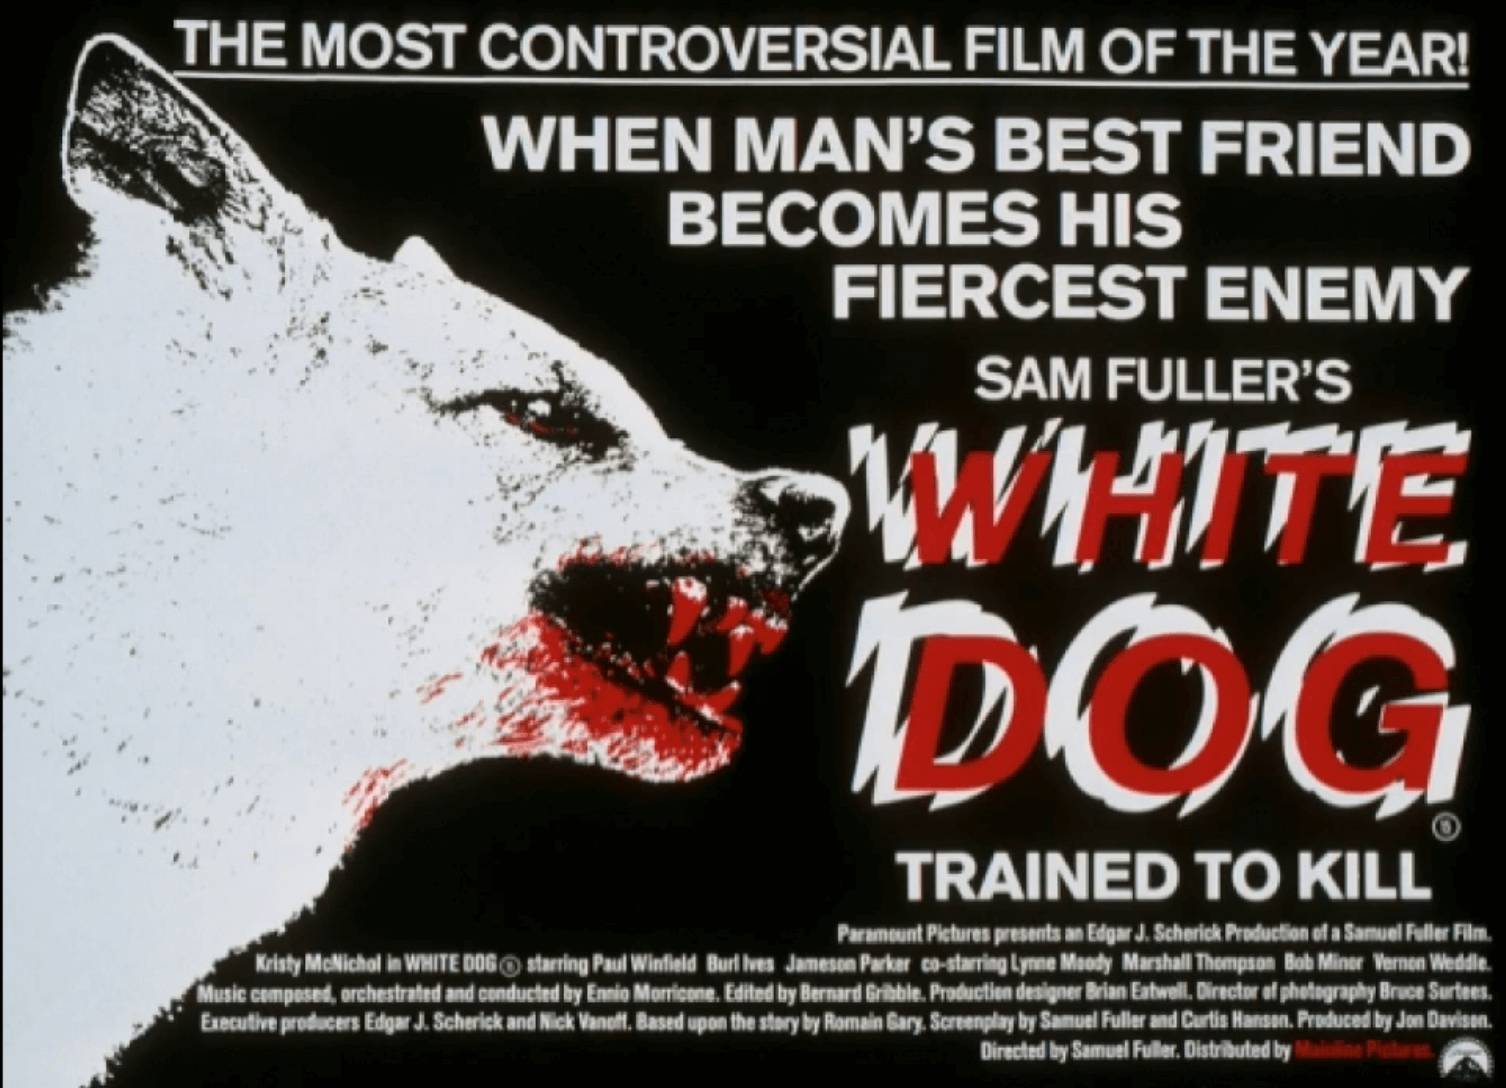 美國電影《White Dog 》（1982）由Samuel Fuller 執導，講述一隻被訓練攻擊黑人的白狗，如何被一名黑人訓狗師重新訓練，從而探討種族歧視是否能夠經治療解決。